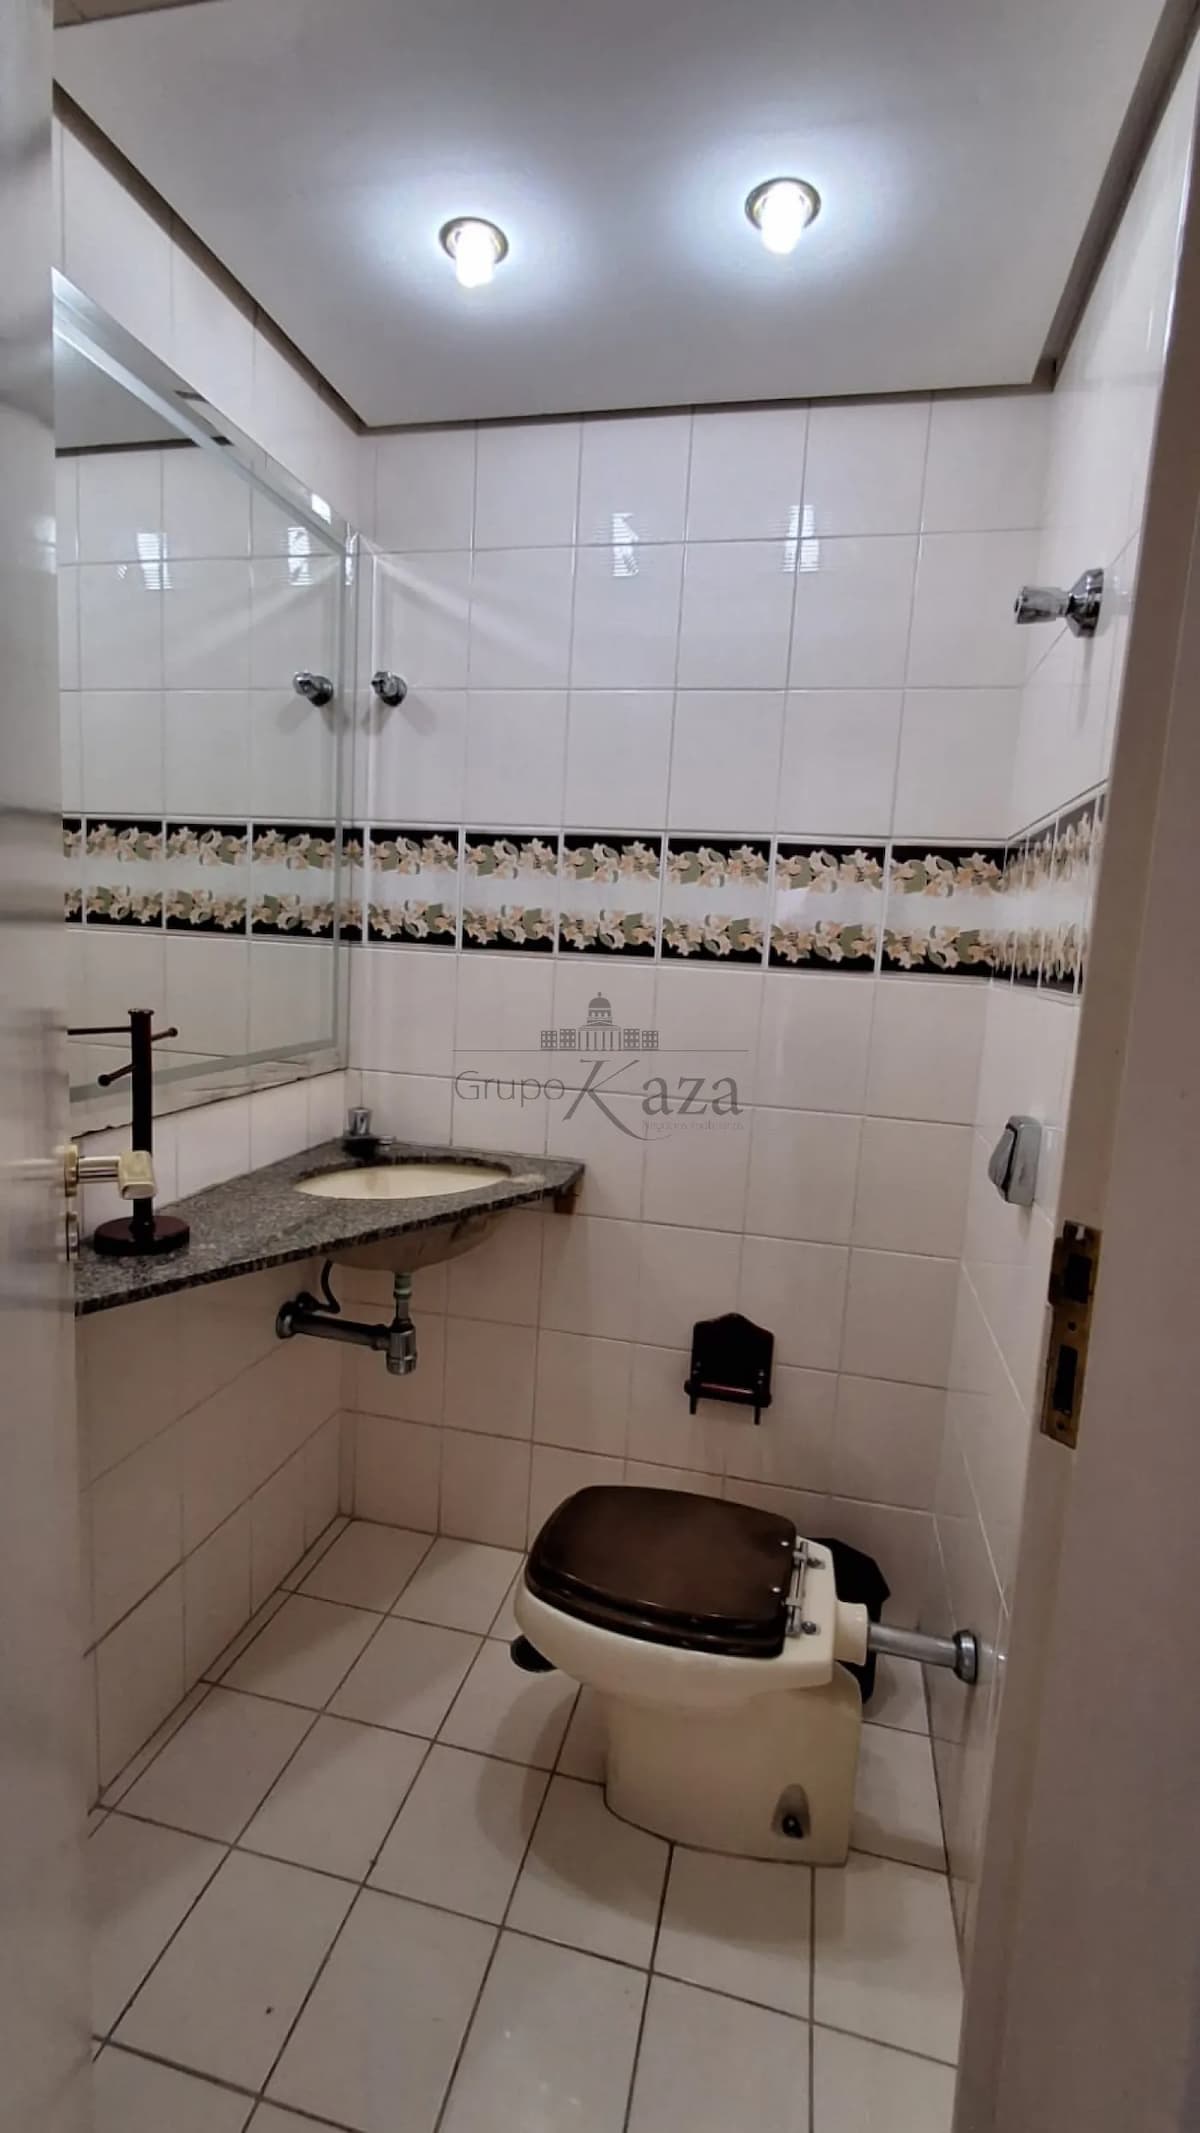 Foto 36 de Apartamento Padrão em Vila Ema, São José dos Campos - imagem 36